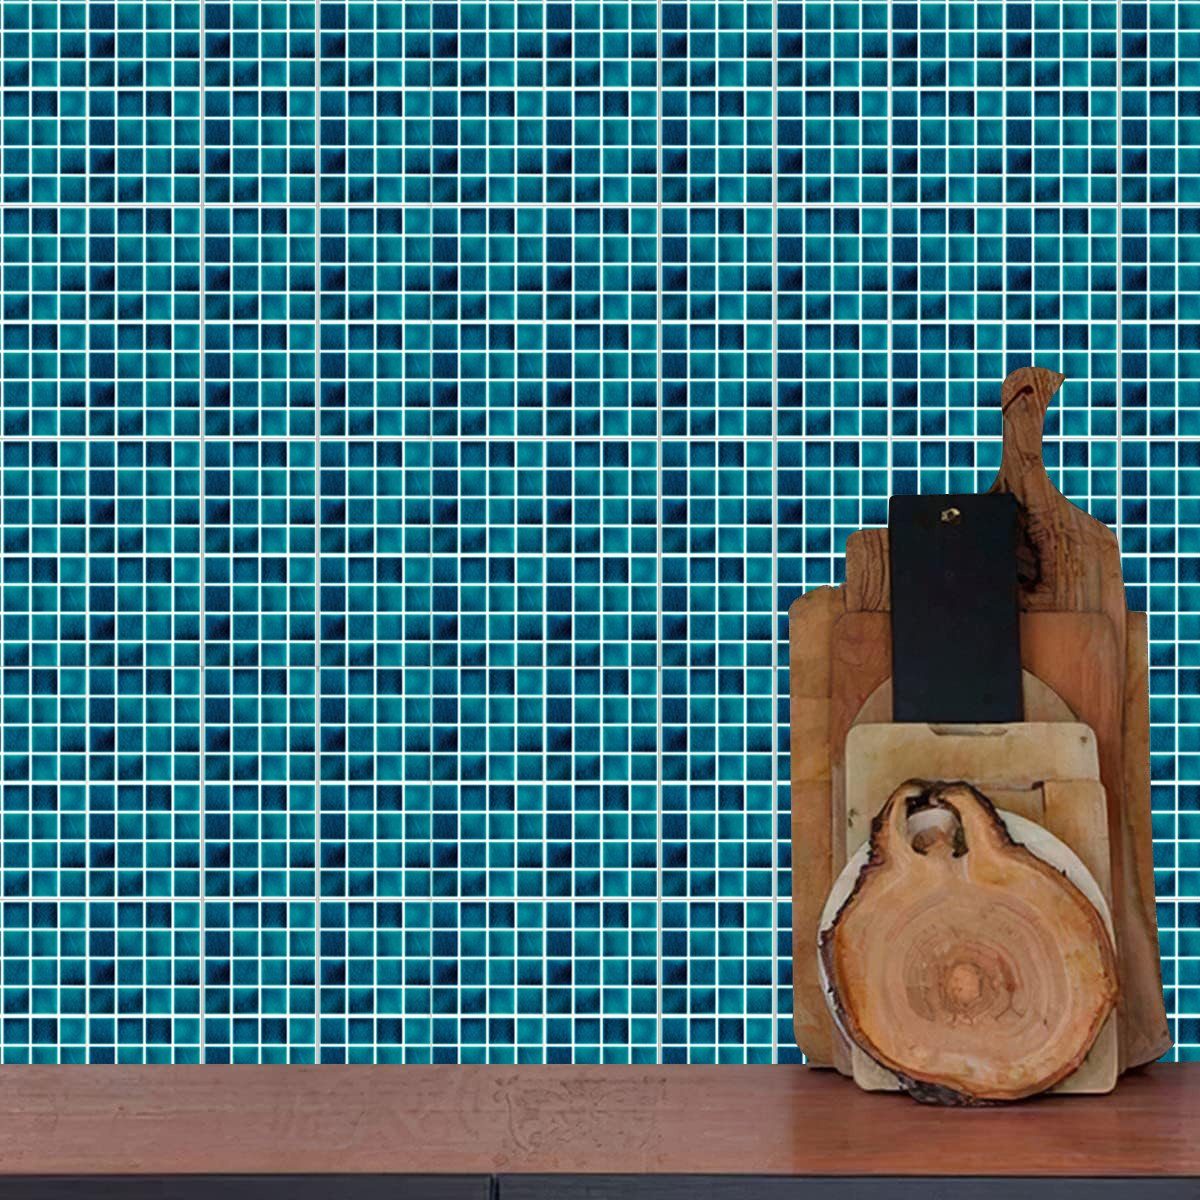 1 Küche Jormftte Aufkleber,Stein-Effekt-Mosaik Wandfliesen für Wandtattoo Fliesenaufkleber Mehrfarbig